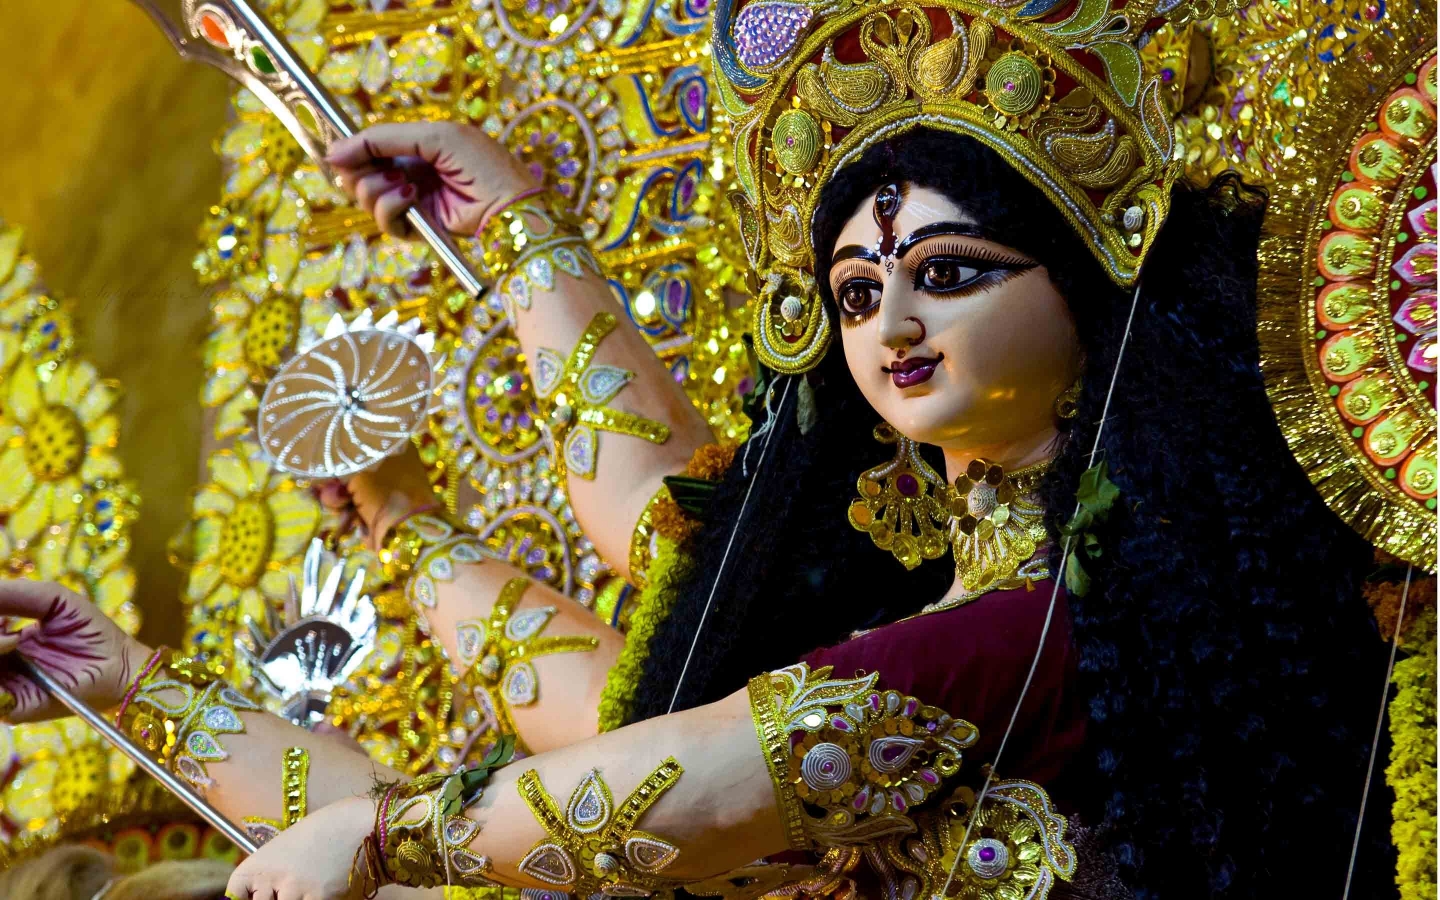 Maa Durga for 1440 x 900 widescreen resolution